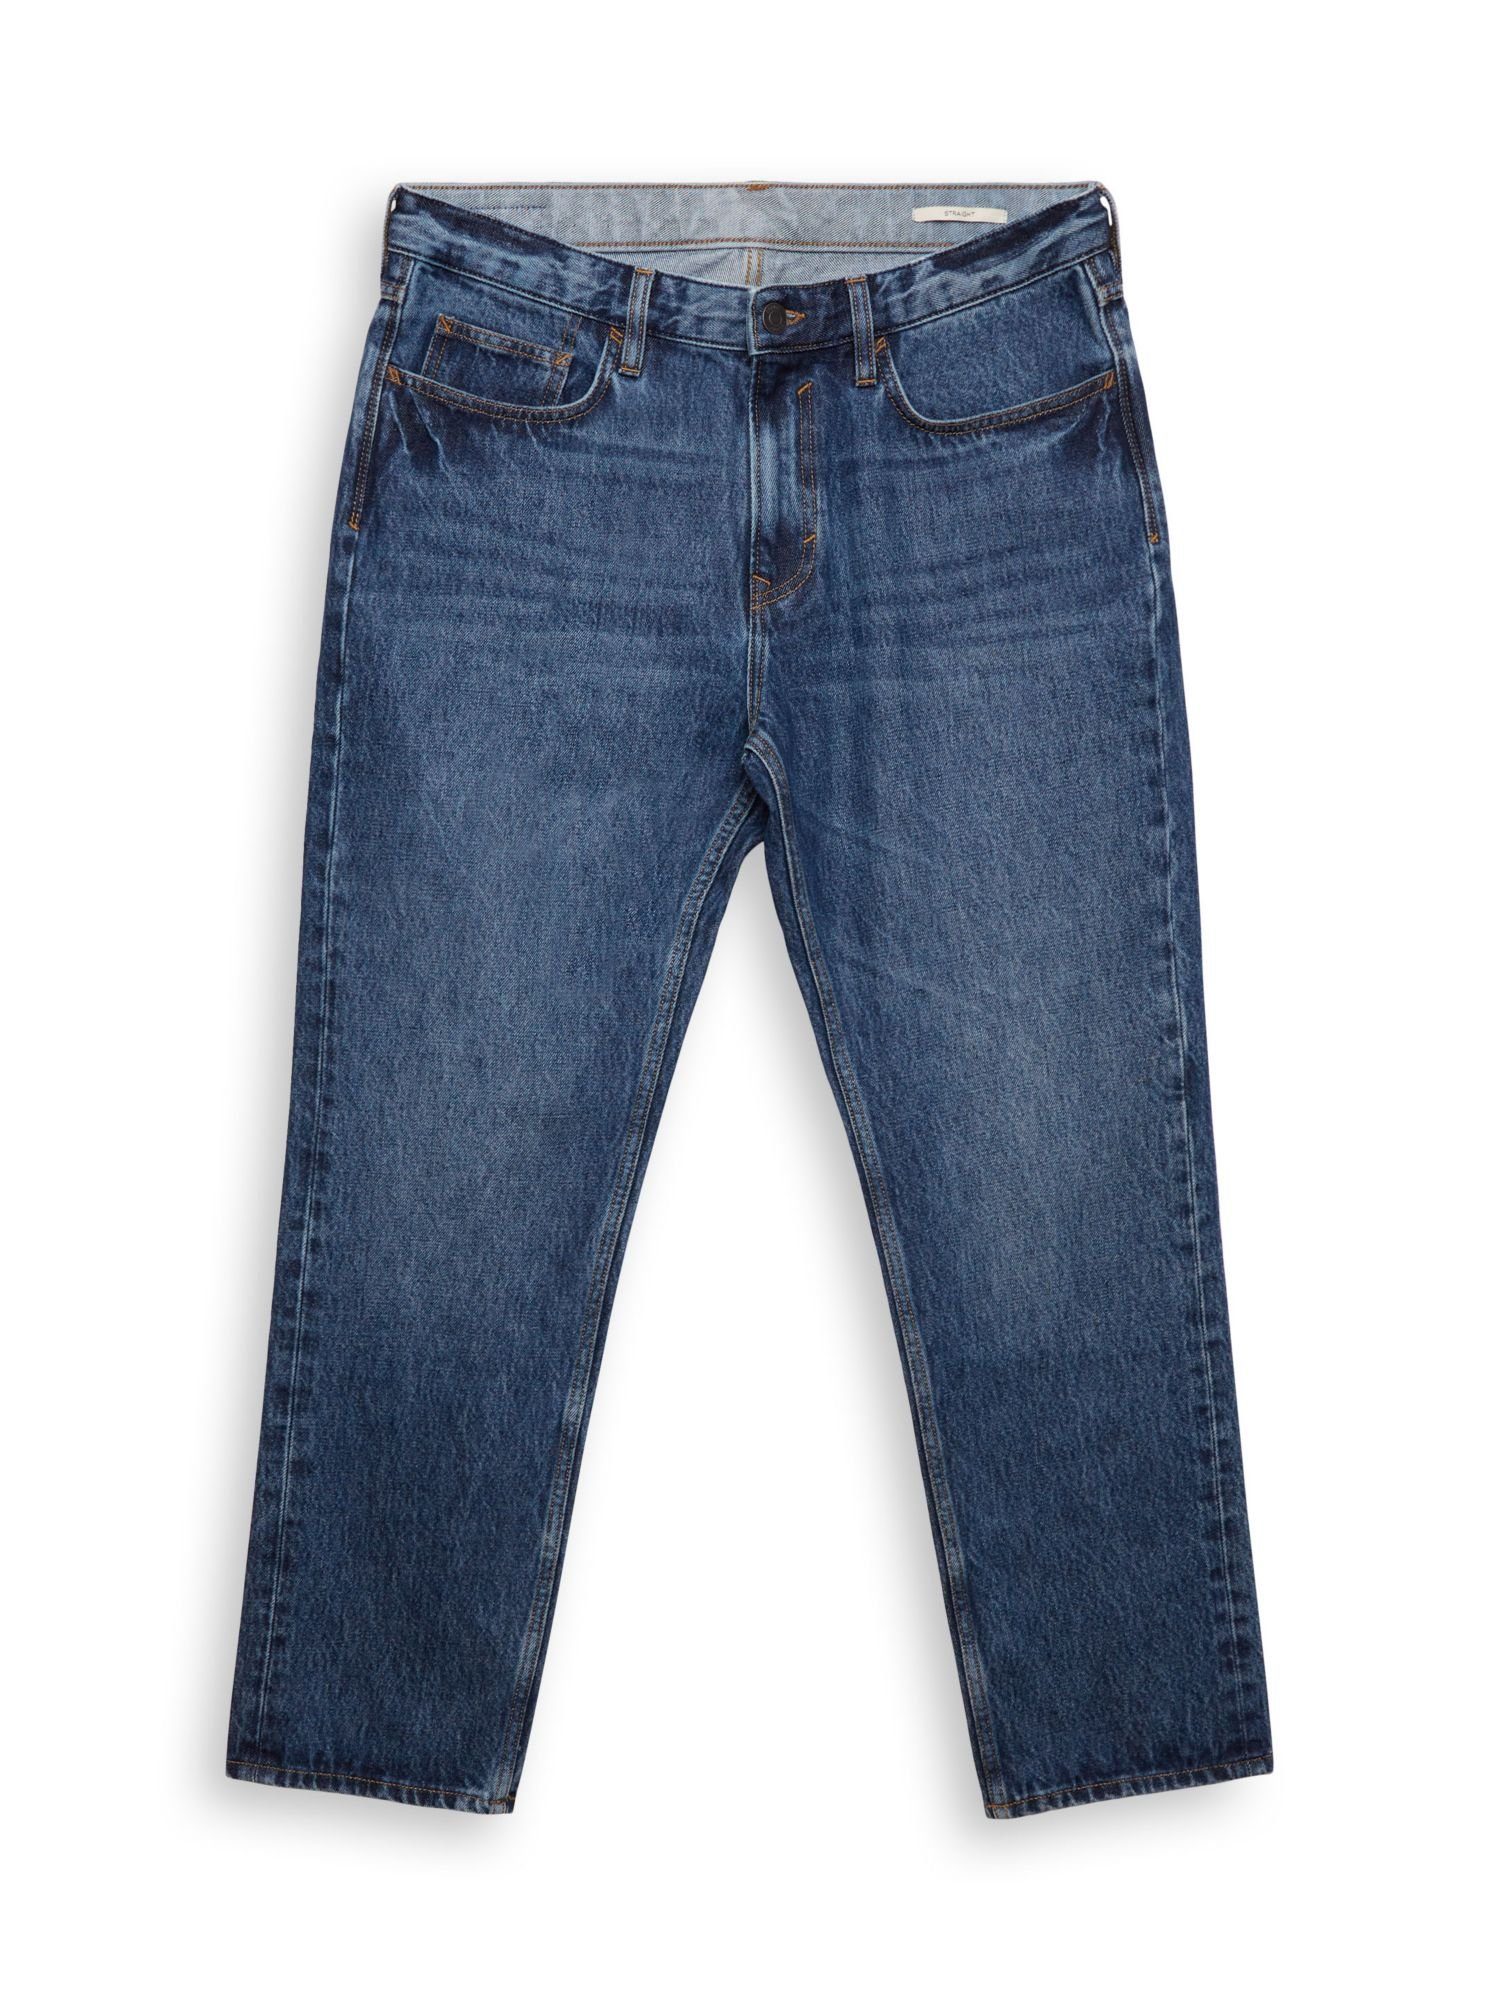 Esprit Straight-Jeans Jeans mit geradem Bein und mittlerer Bundhöhe BLUE DARK WASHED